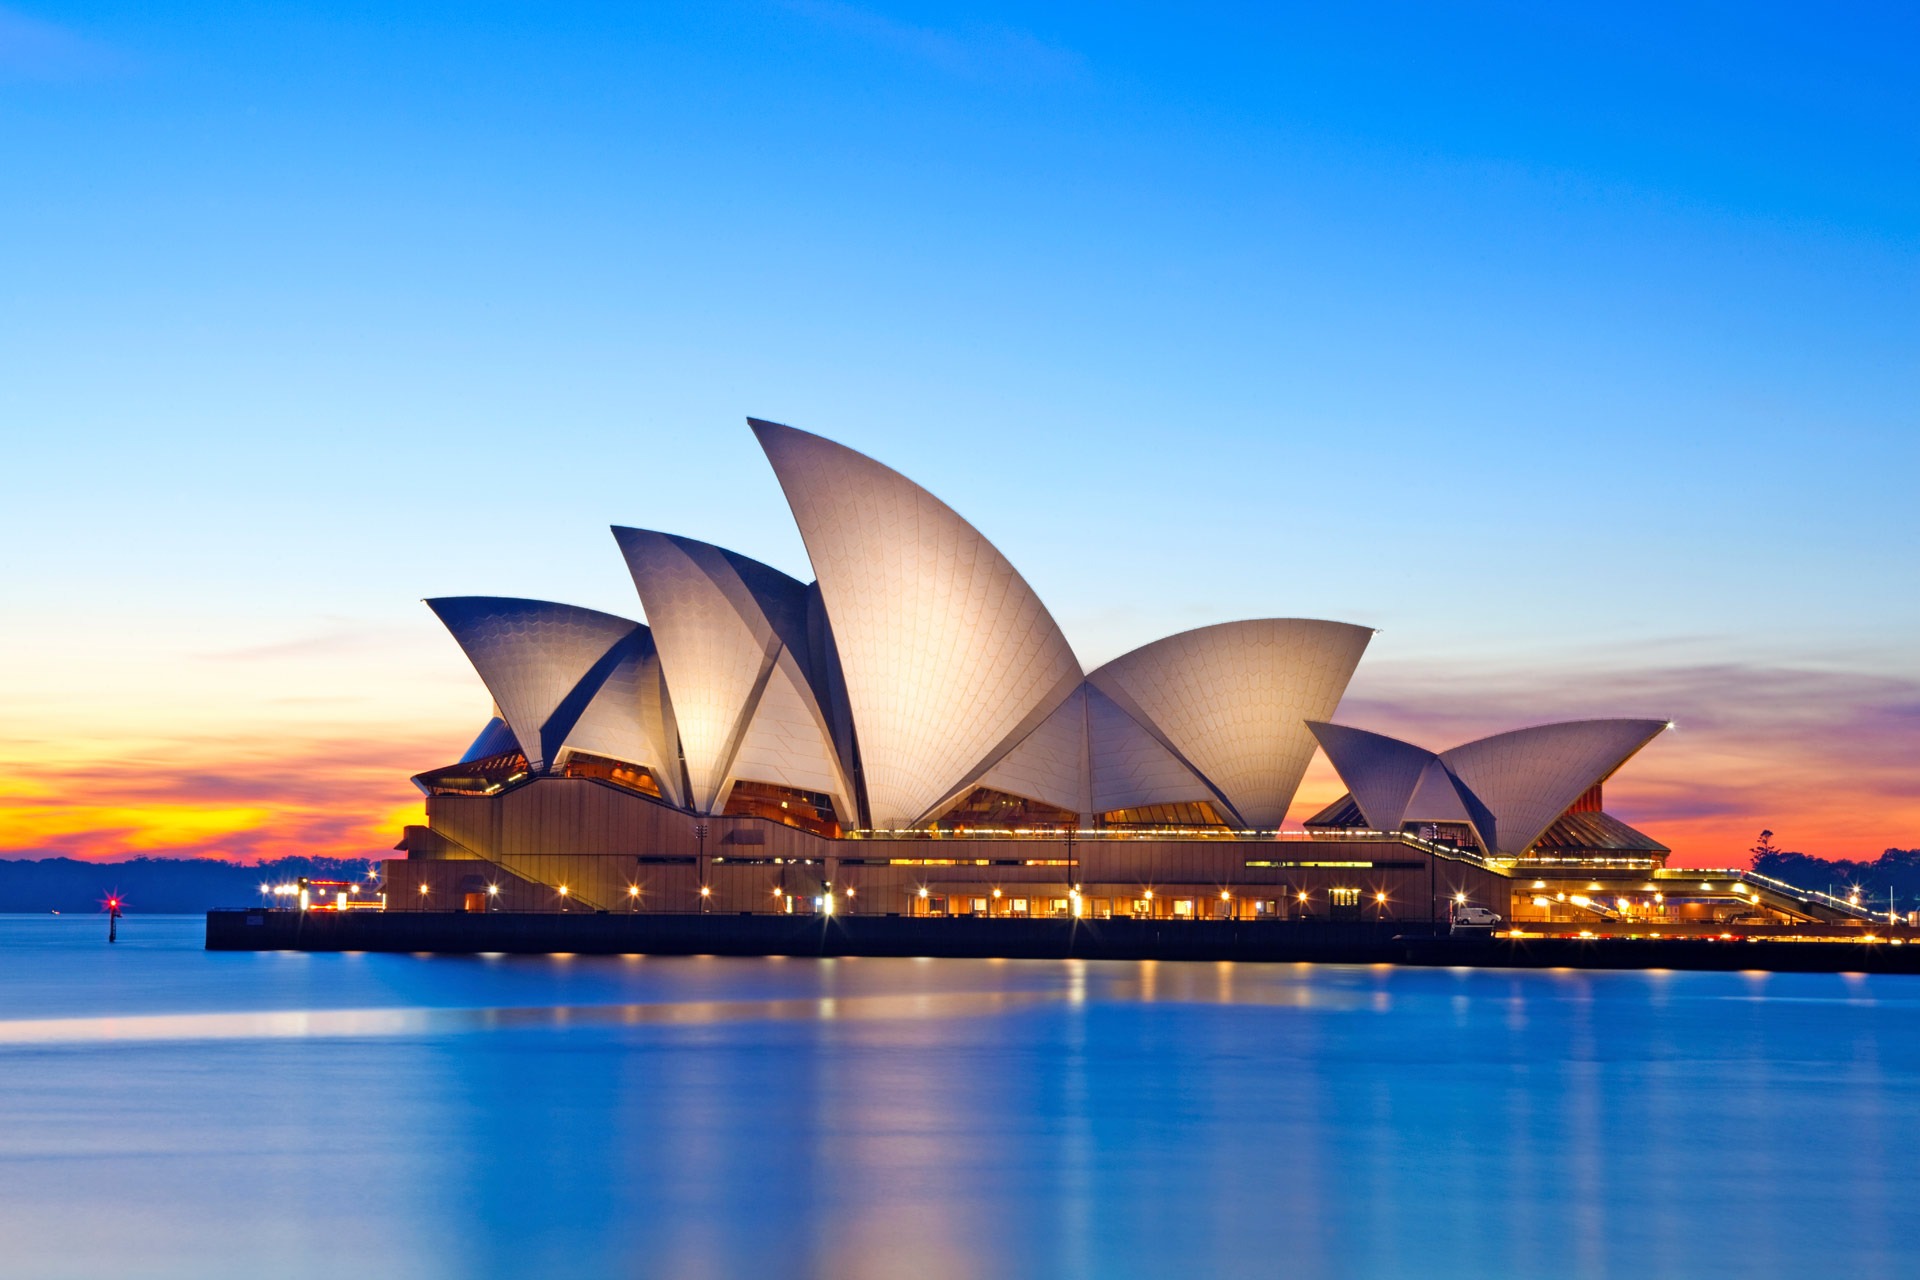 Hướng dẫn khám phá nhà hát Opera Sydney chi tiết nhất - Fantasea Travel